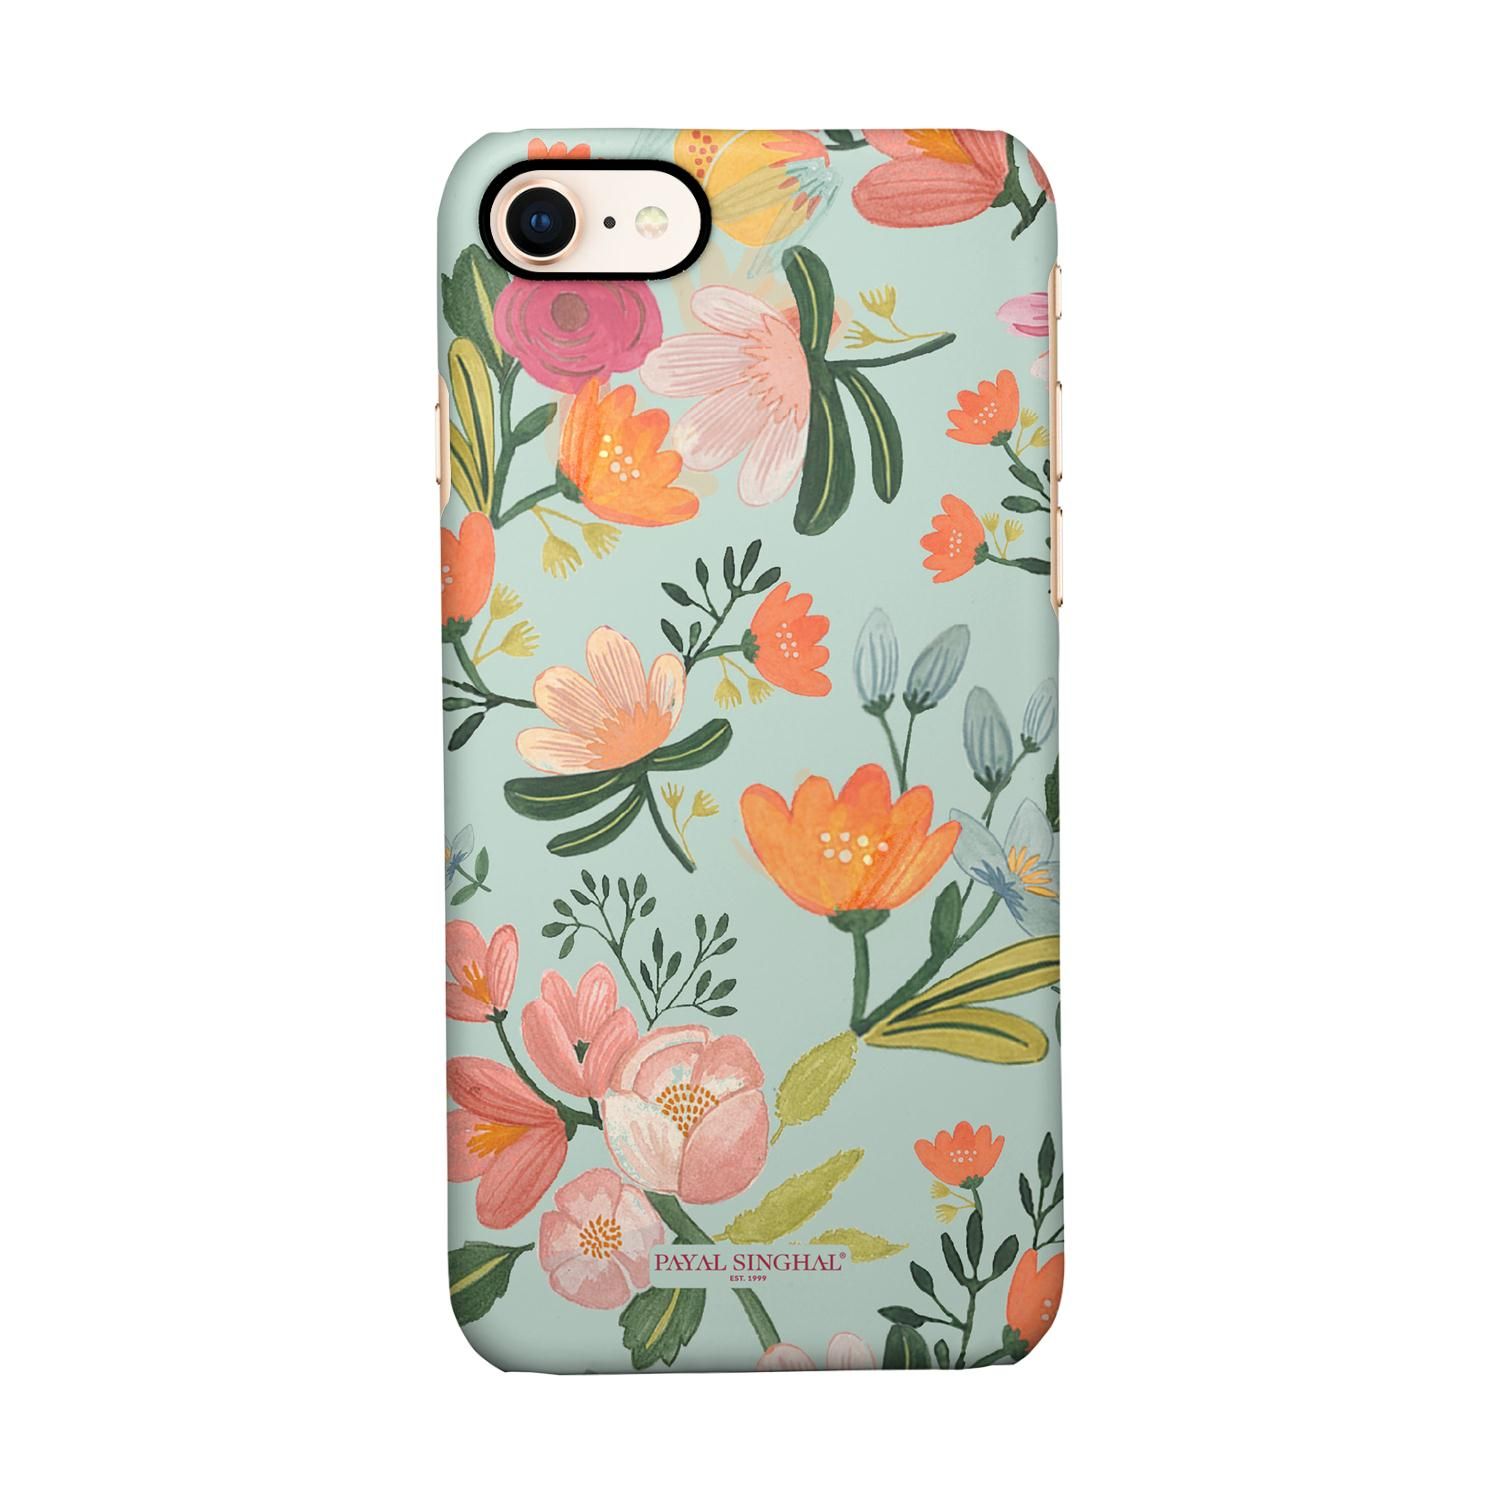 Buy Payal Singhal Aqua Handpainted Flower - Sleek Phone Case for iPhone 7 Online